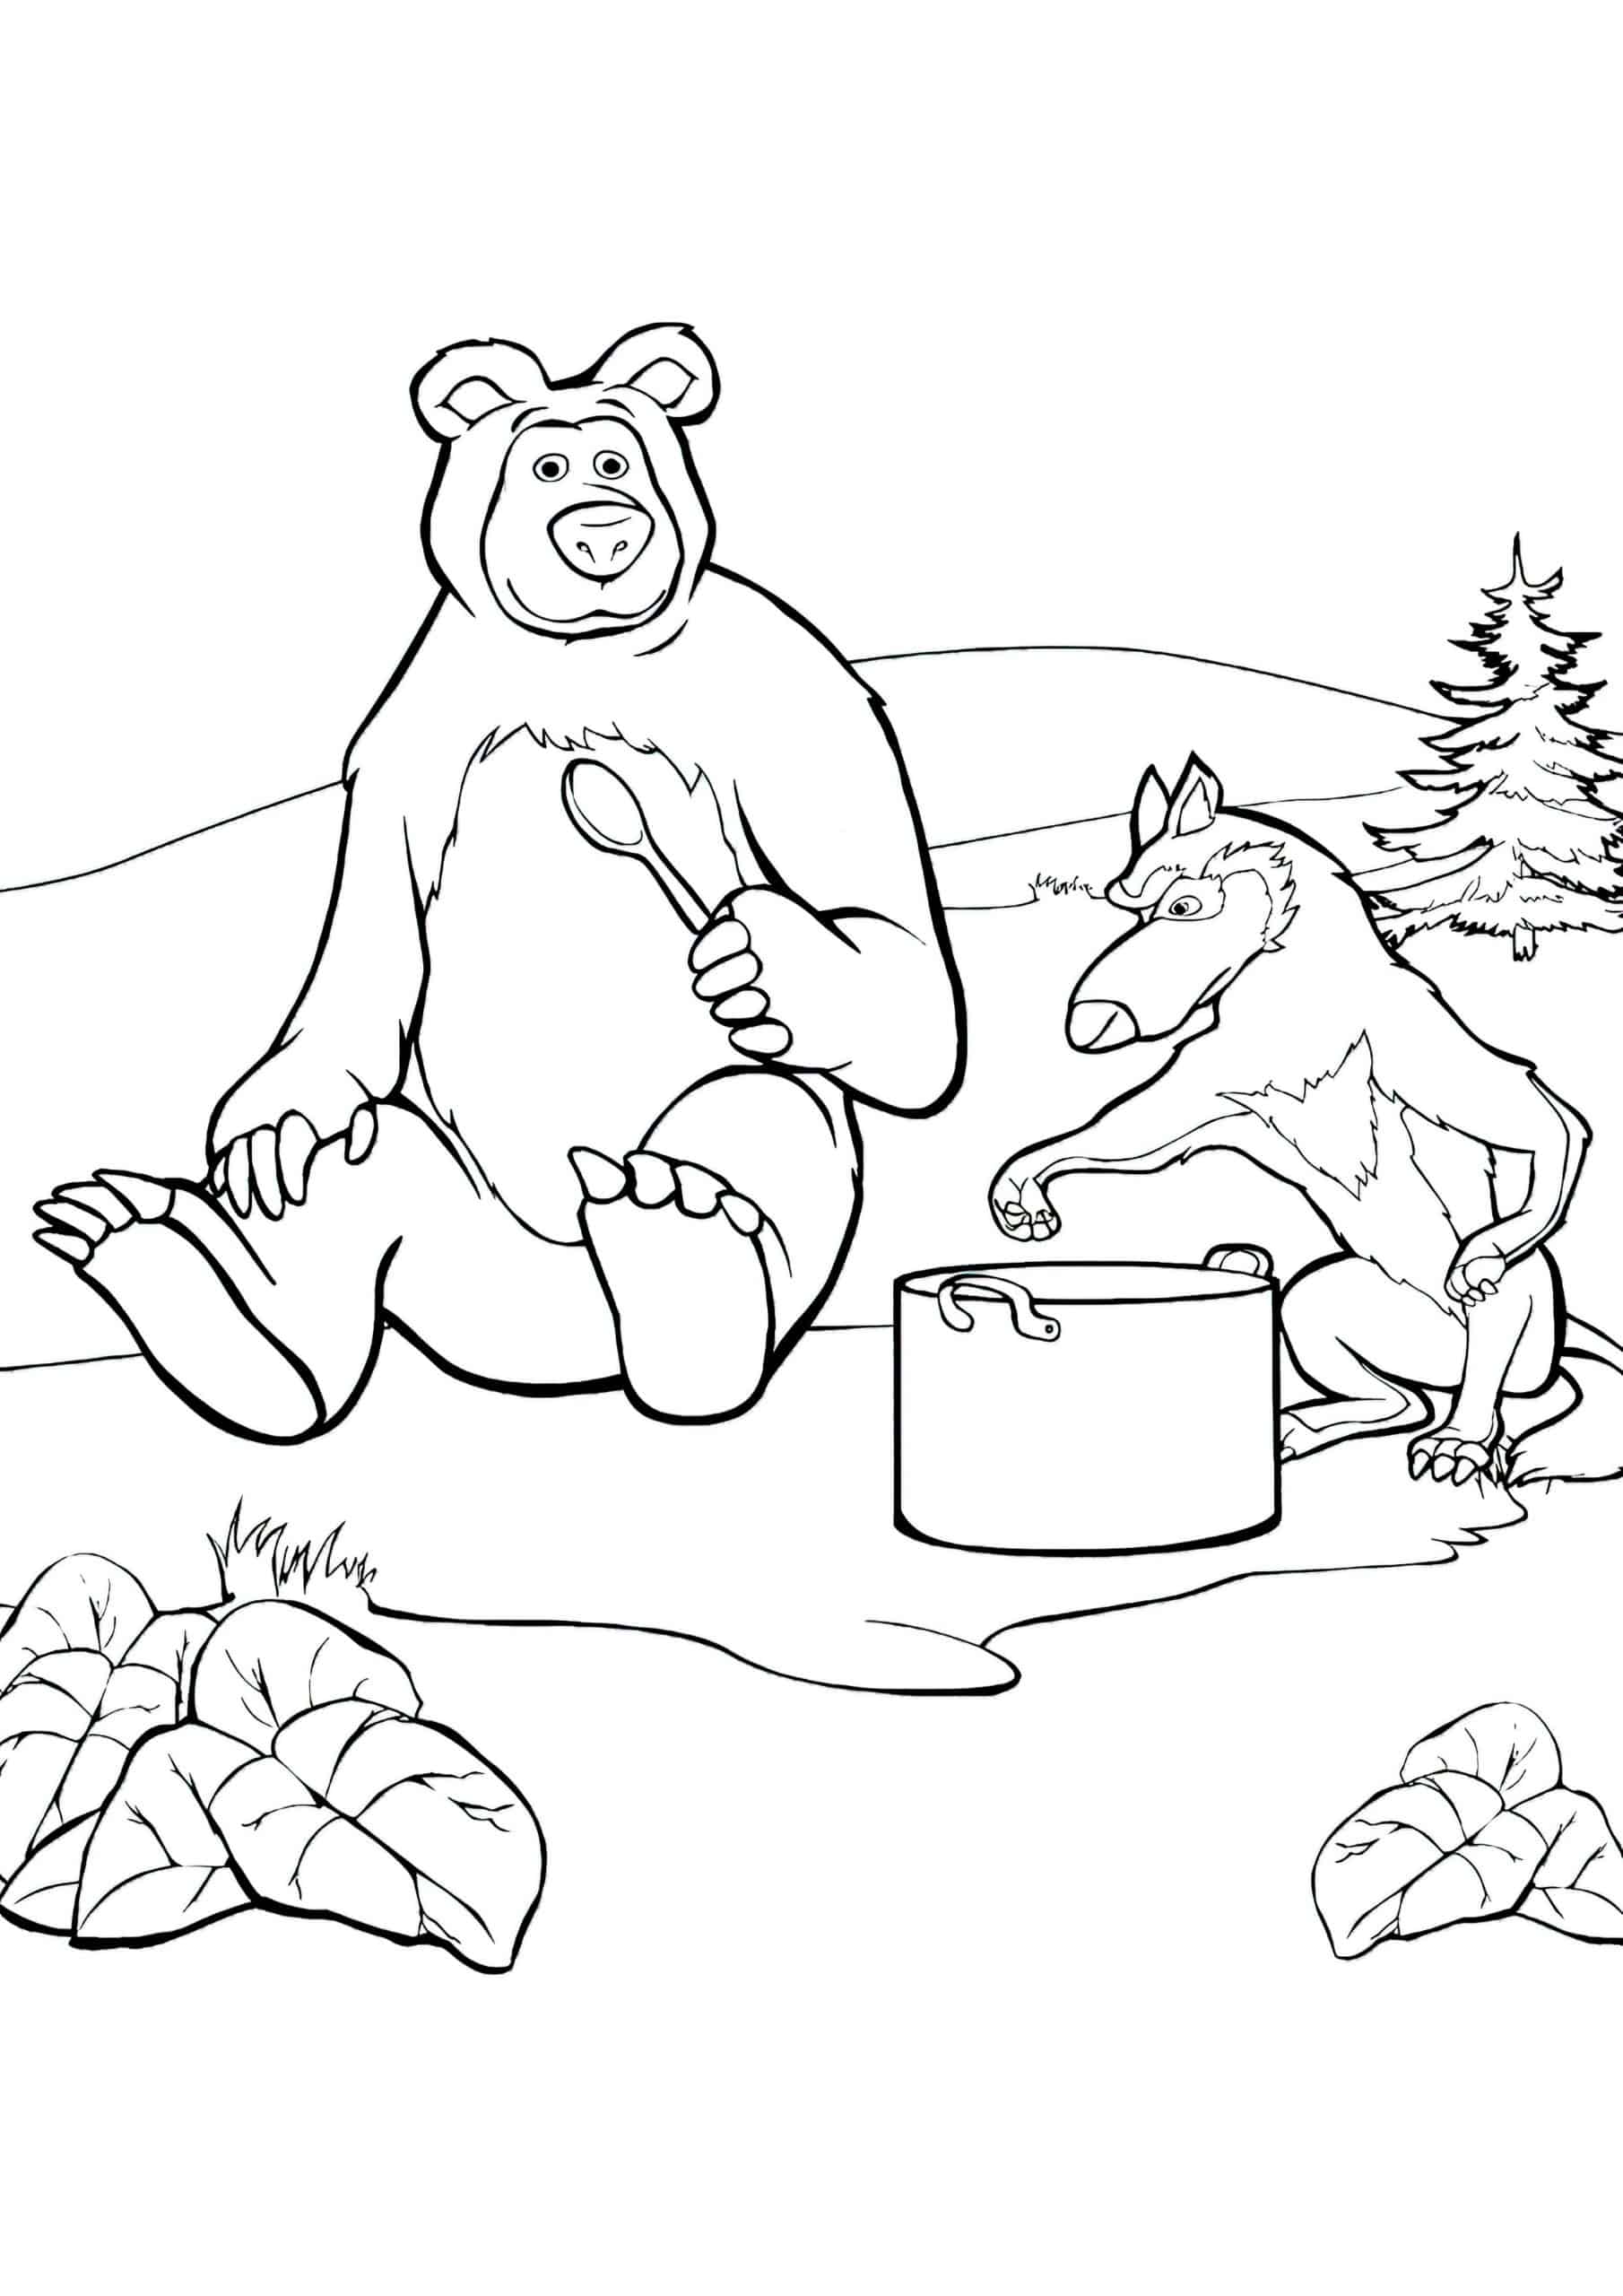 דף צביעה דוב וזאב מכינים מרק